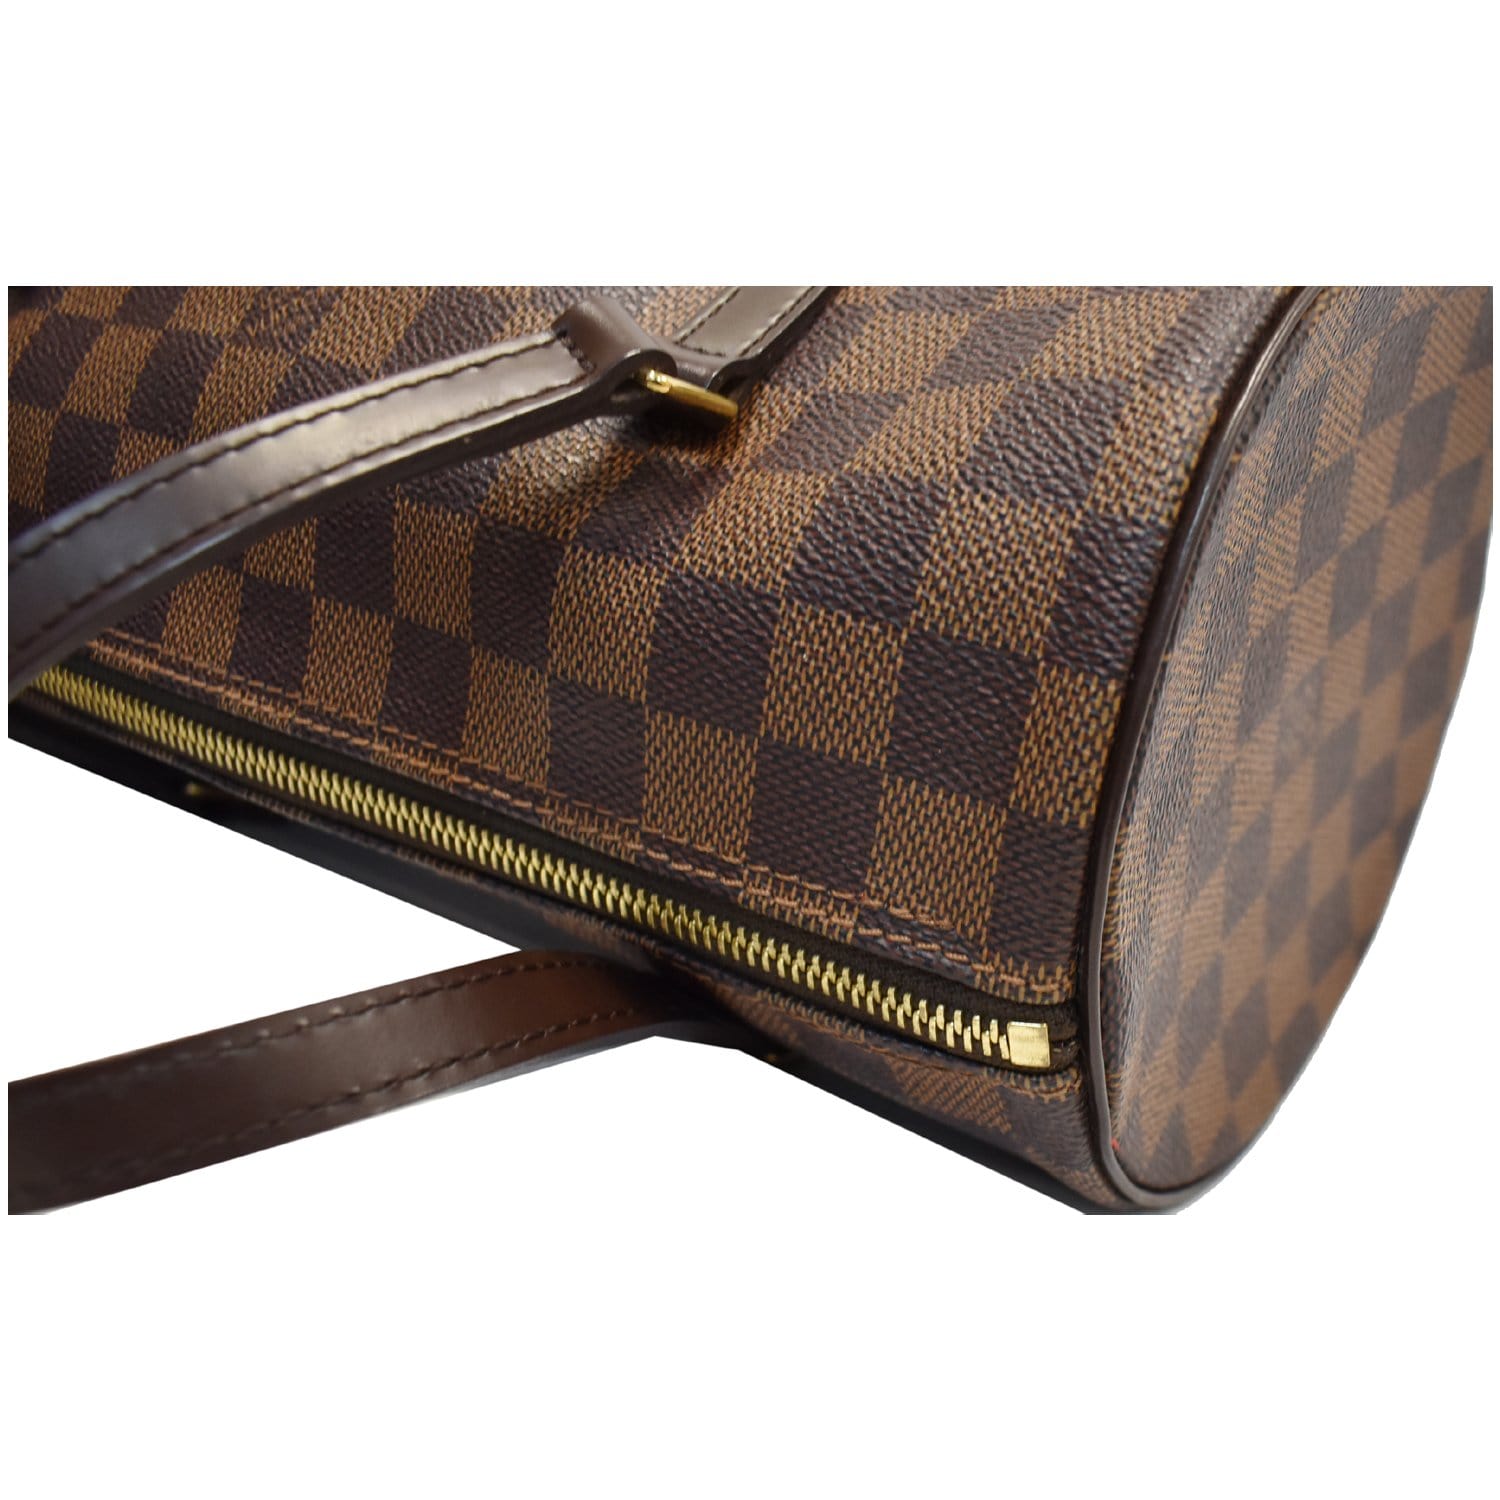 M92663 – dct - Multi - LOUIS VUITTON Papillon 26 Damier Ebene Shoulder  Handbag Brown - Trouville - Bag - ep_vintage luxury Store - Color - Vuitton  - Louis - Monogram - Hand - Blanc